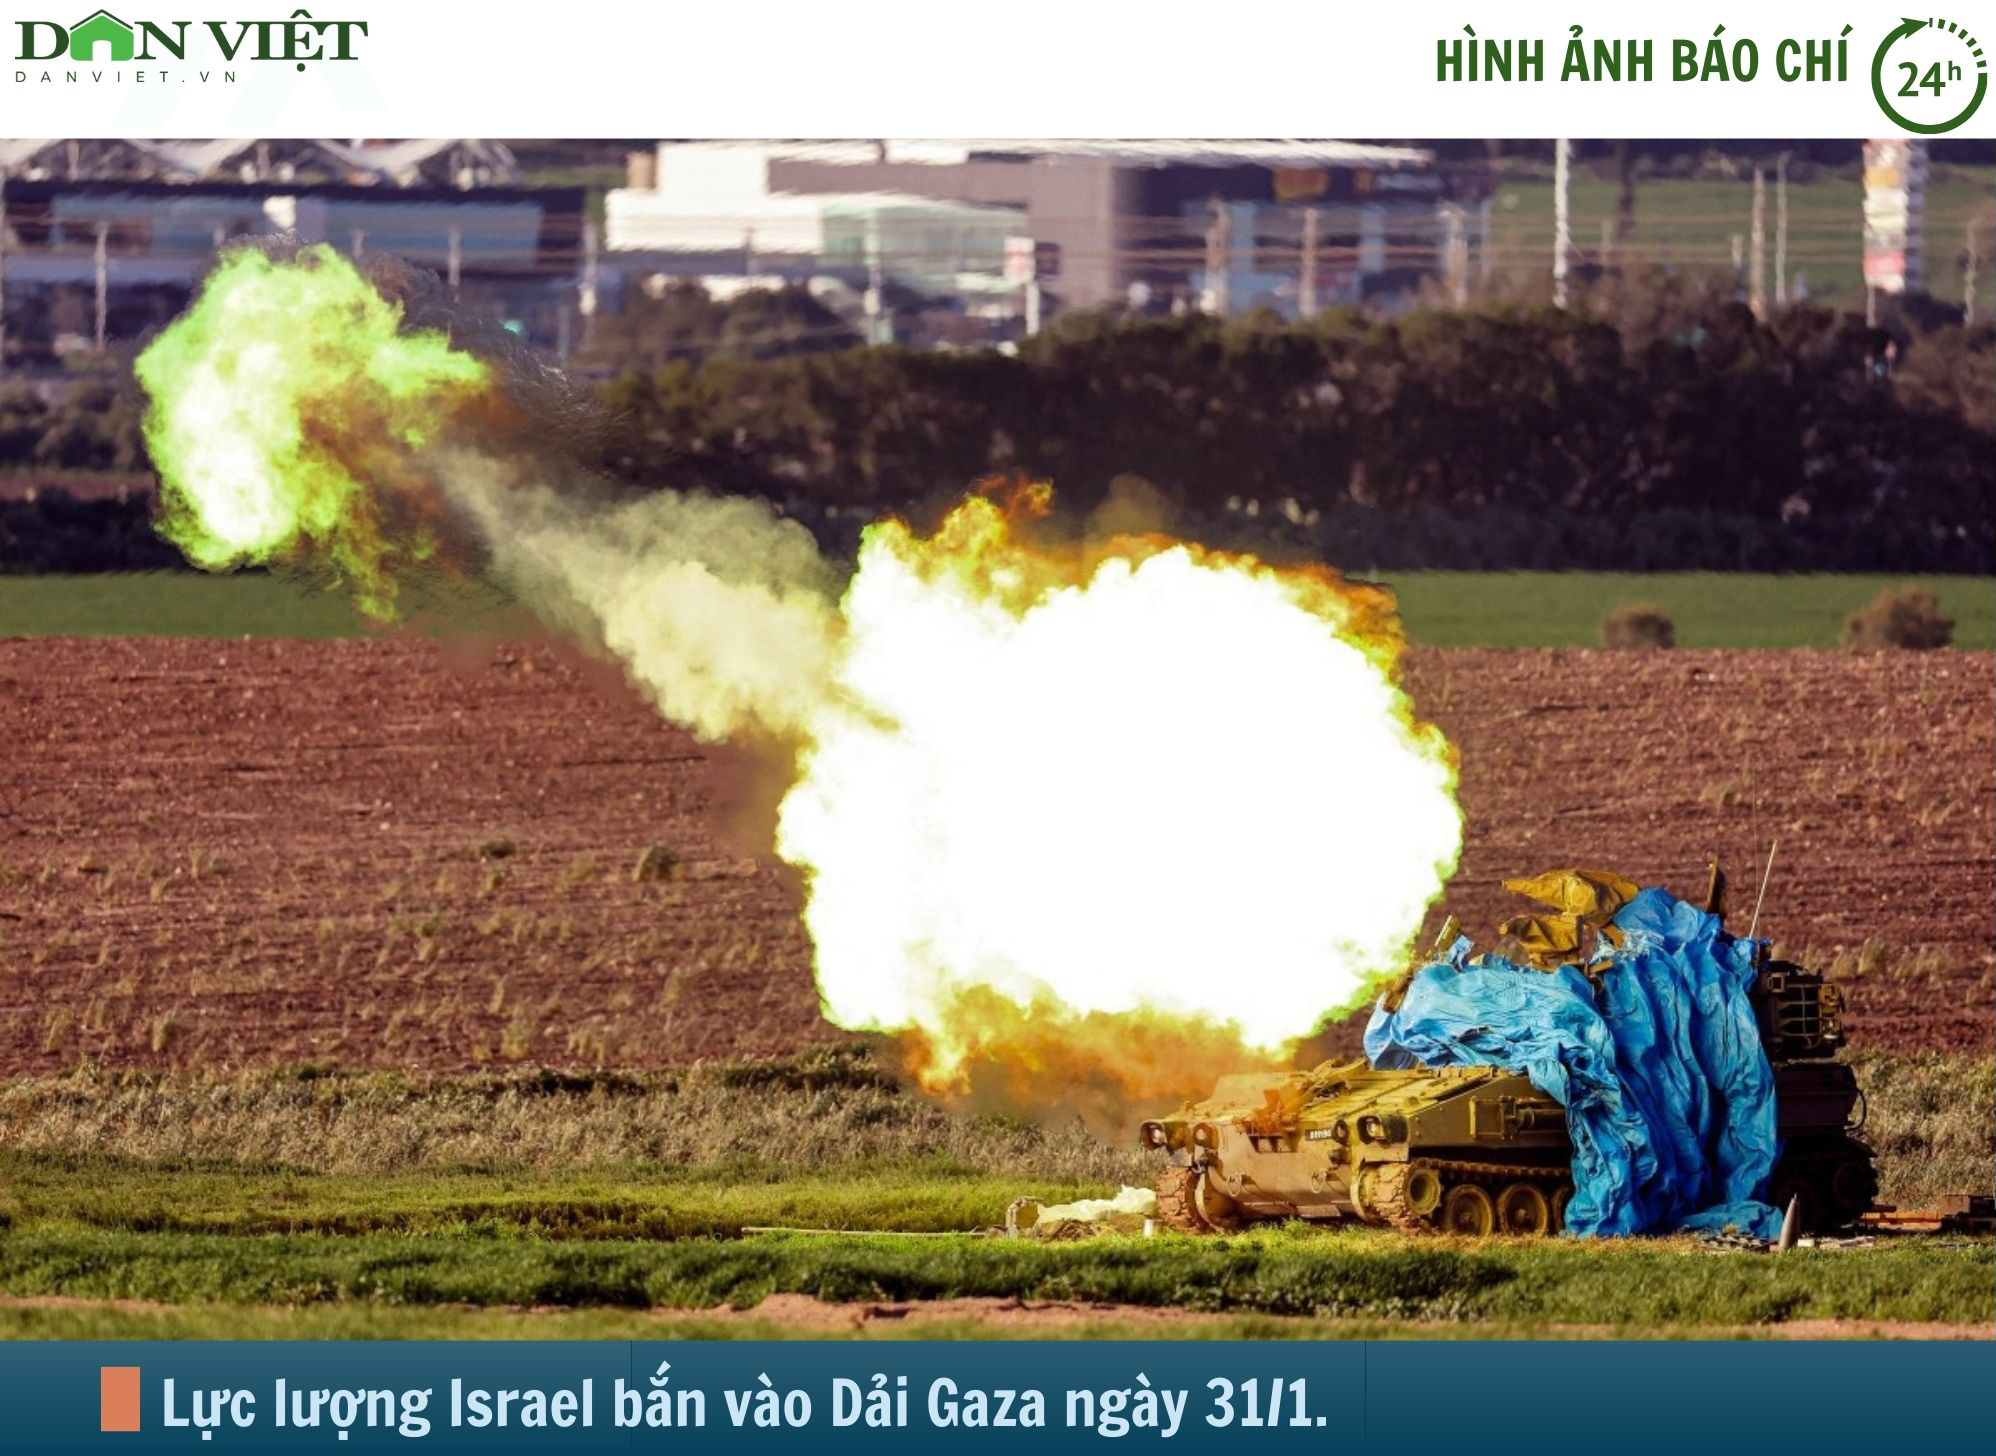 Hình ảnh báo chí 24h: Israel tiếp tục nã đạn vào Dải Gaza và cơ hội ngừng bắn 6 tuần- Ảnh 1.